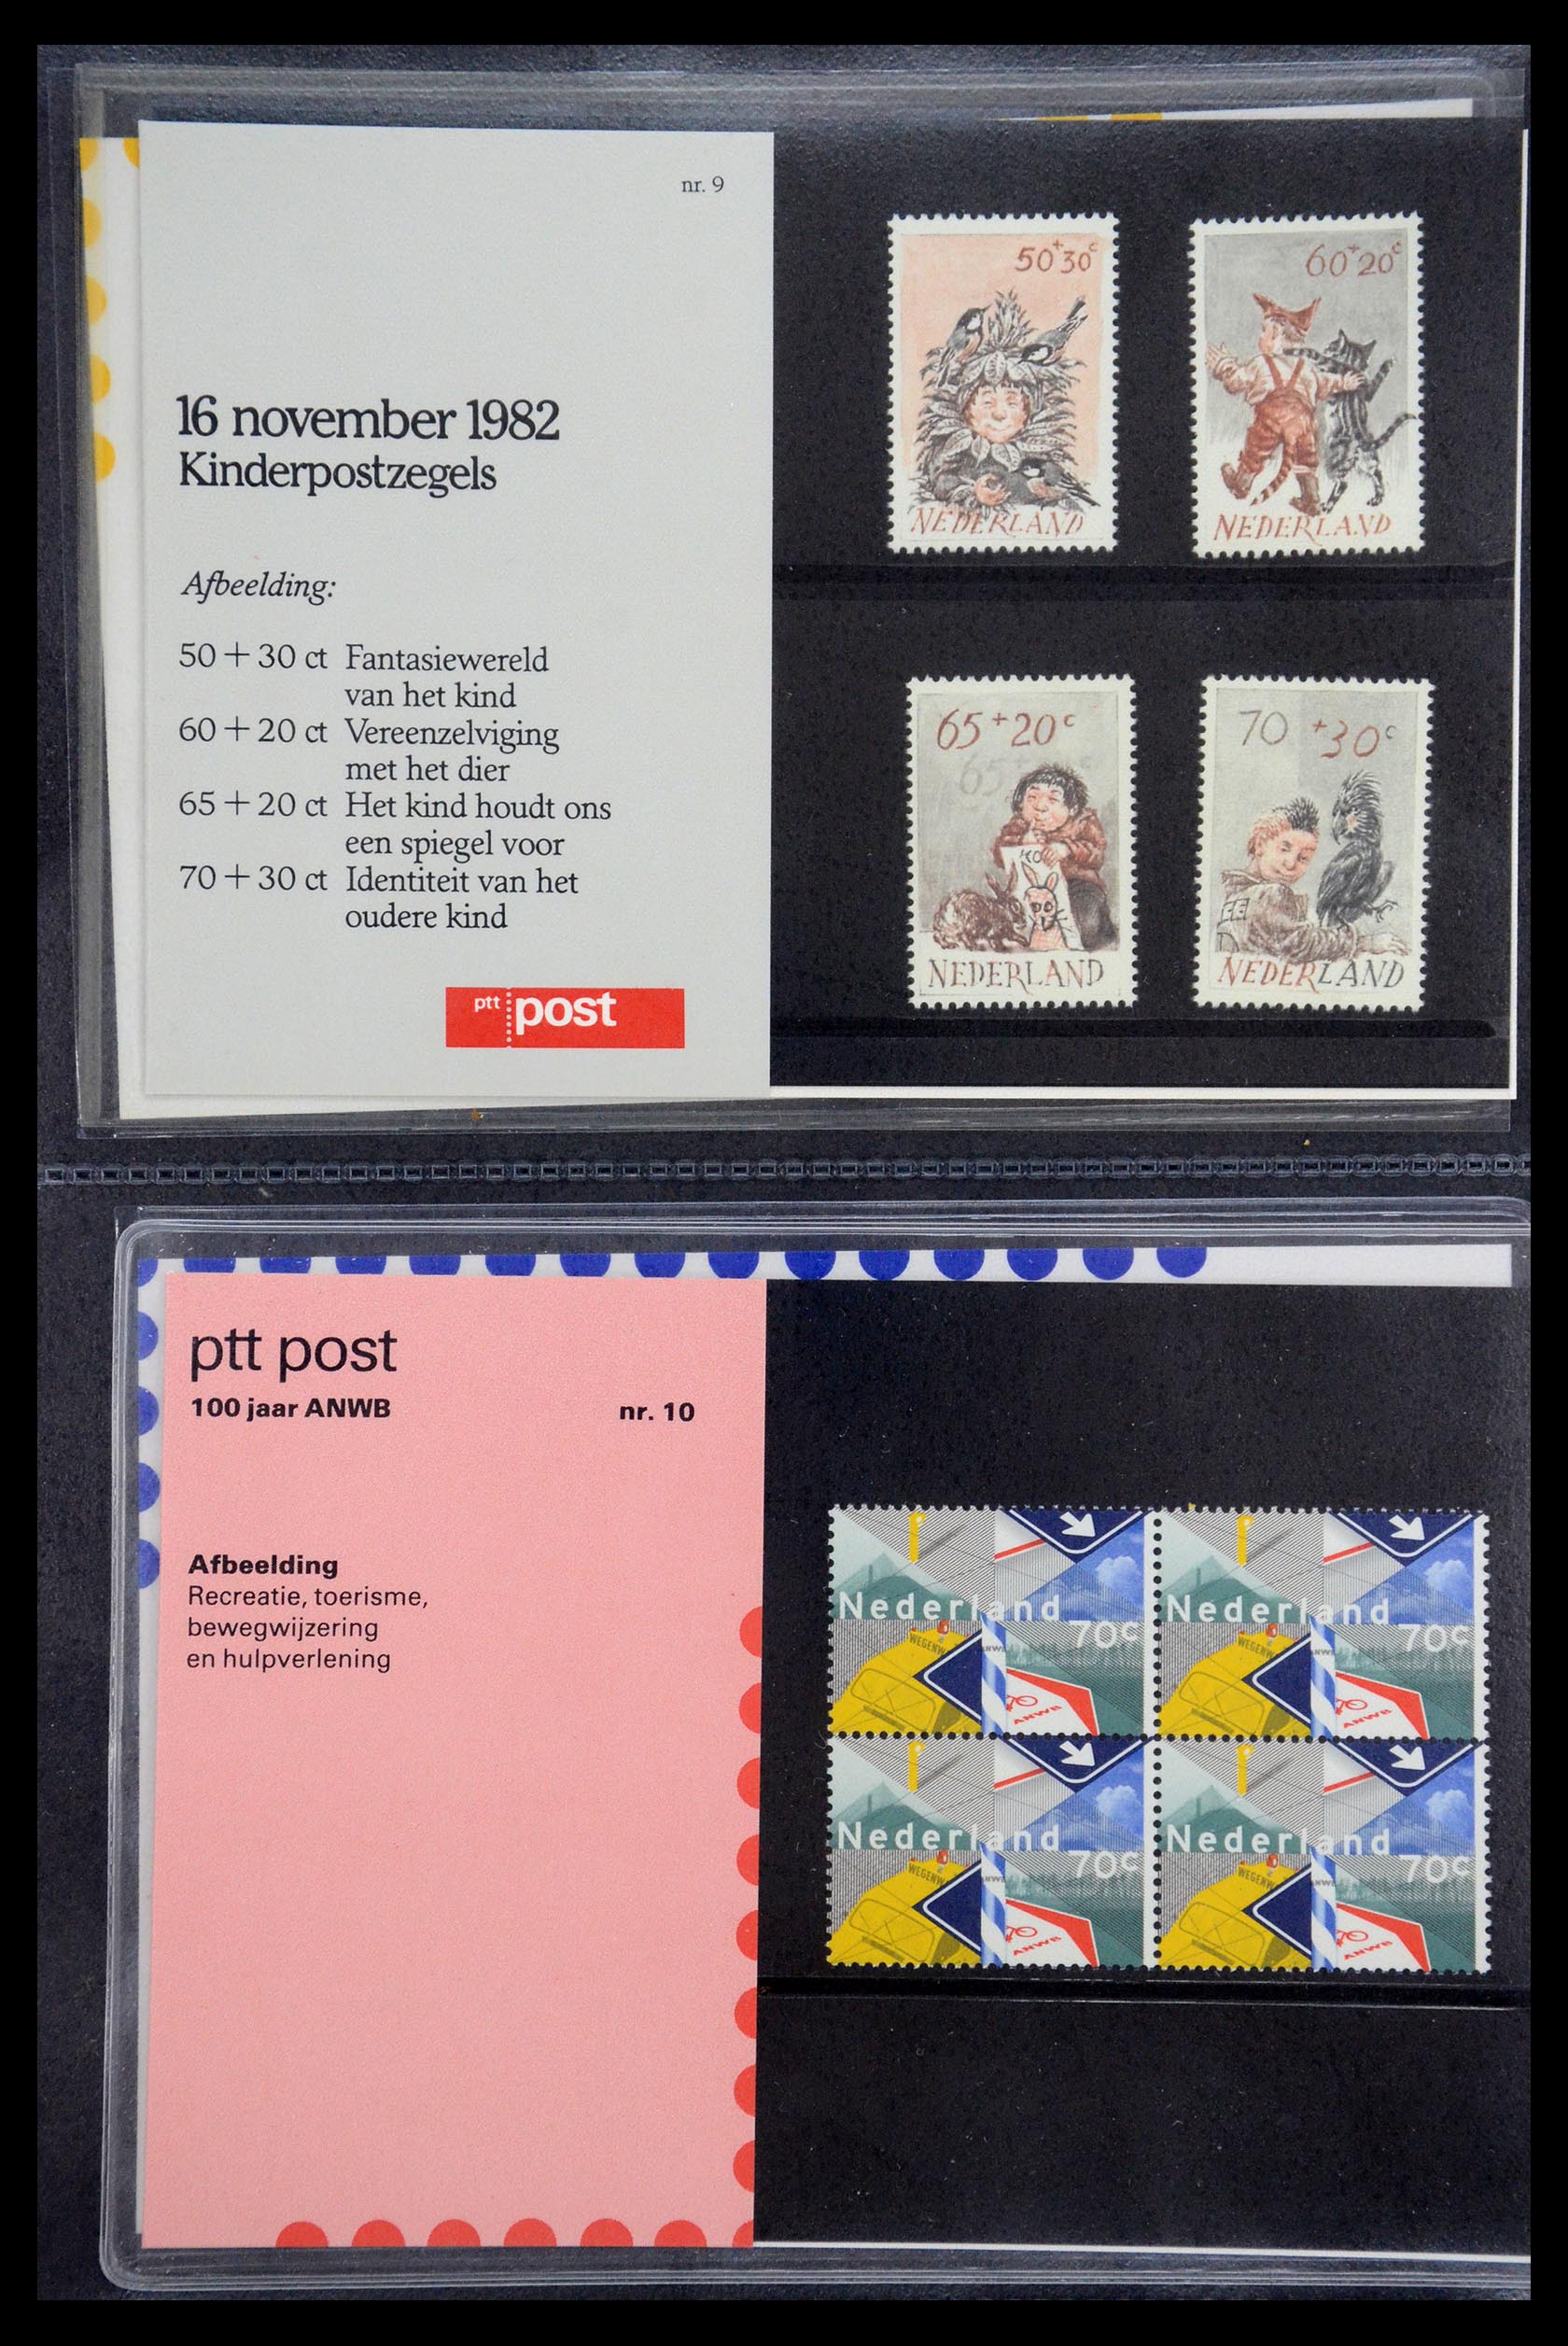 35187 005 - Stamp Collection 35187 Netherlands PTT presentation packs 1982-2019!